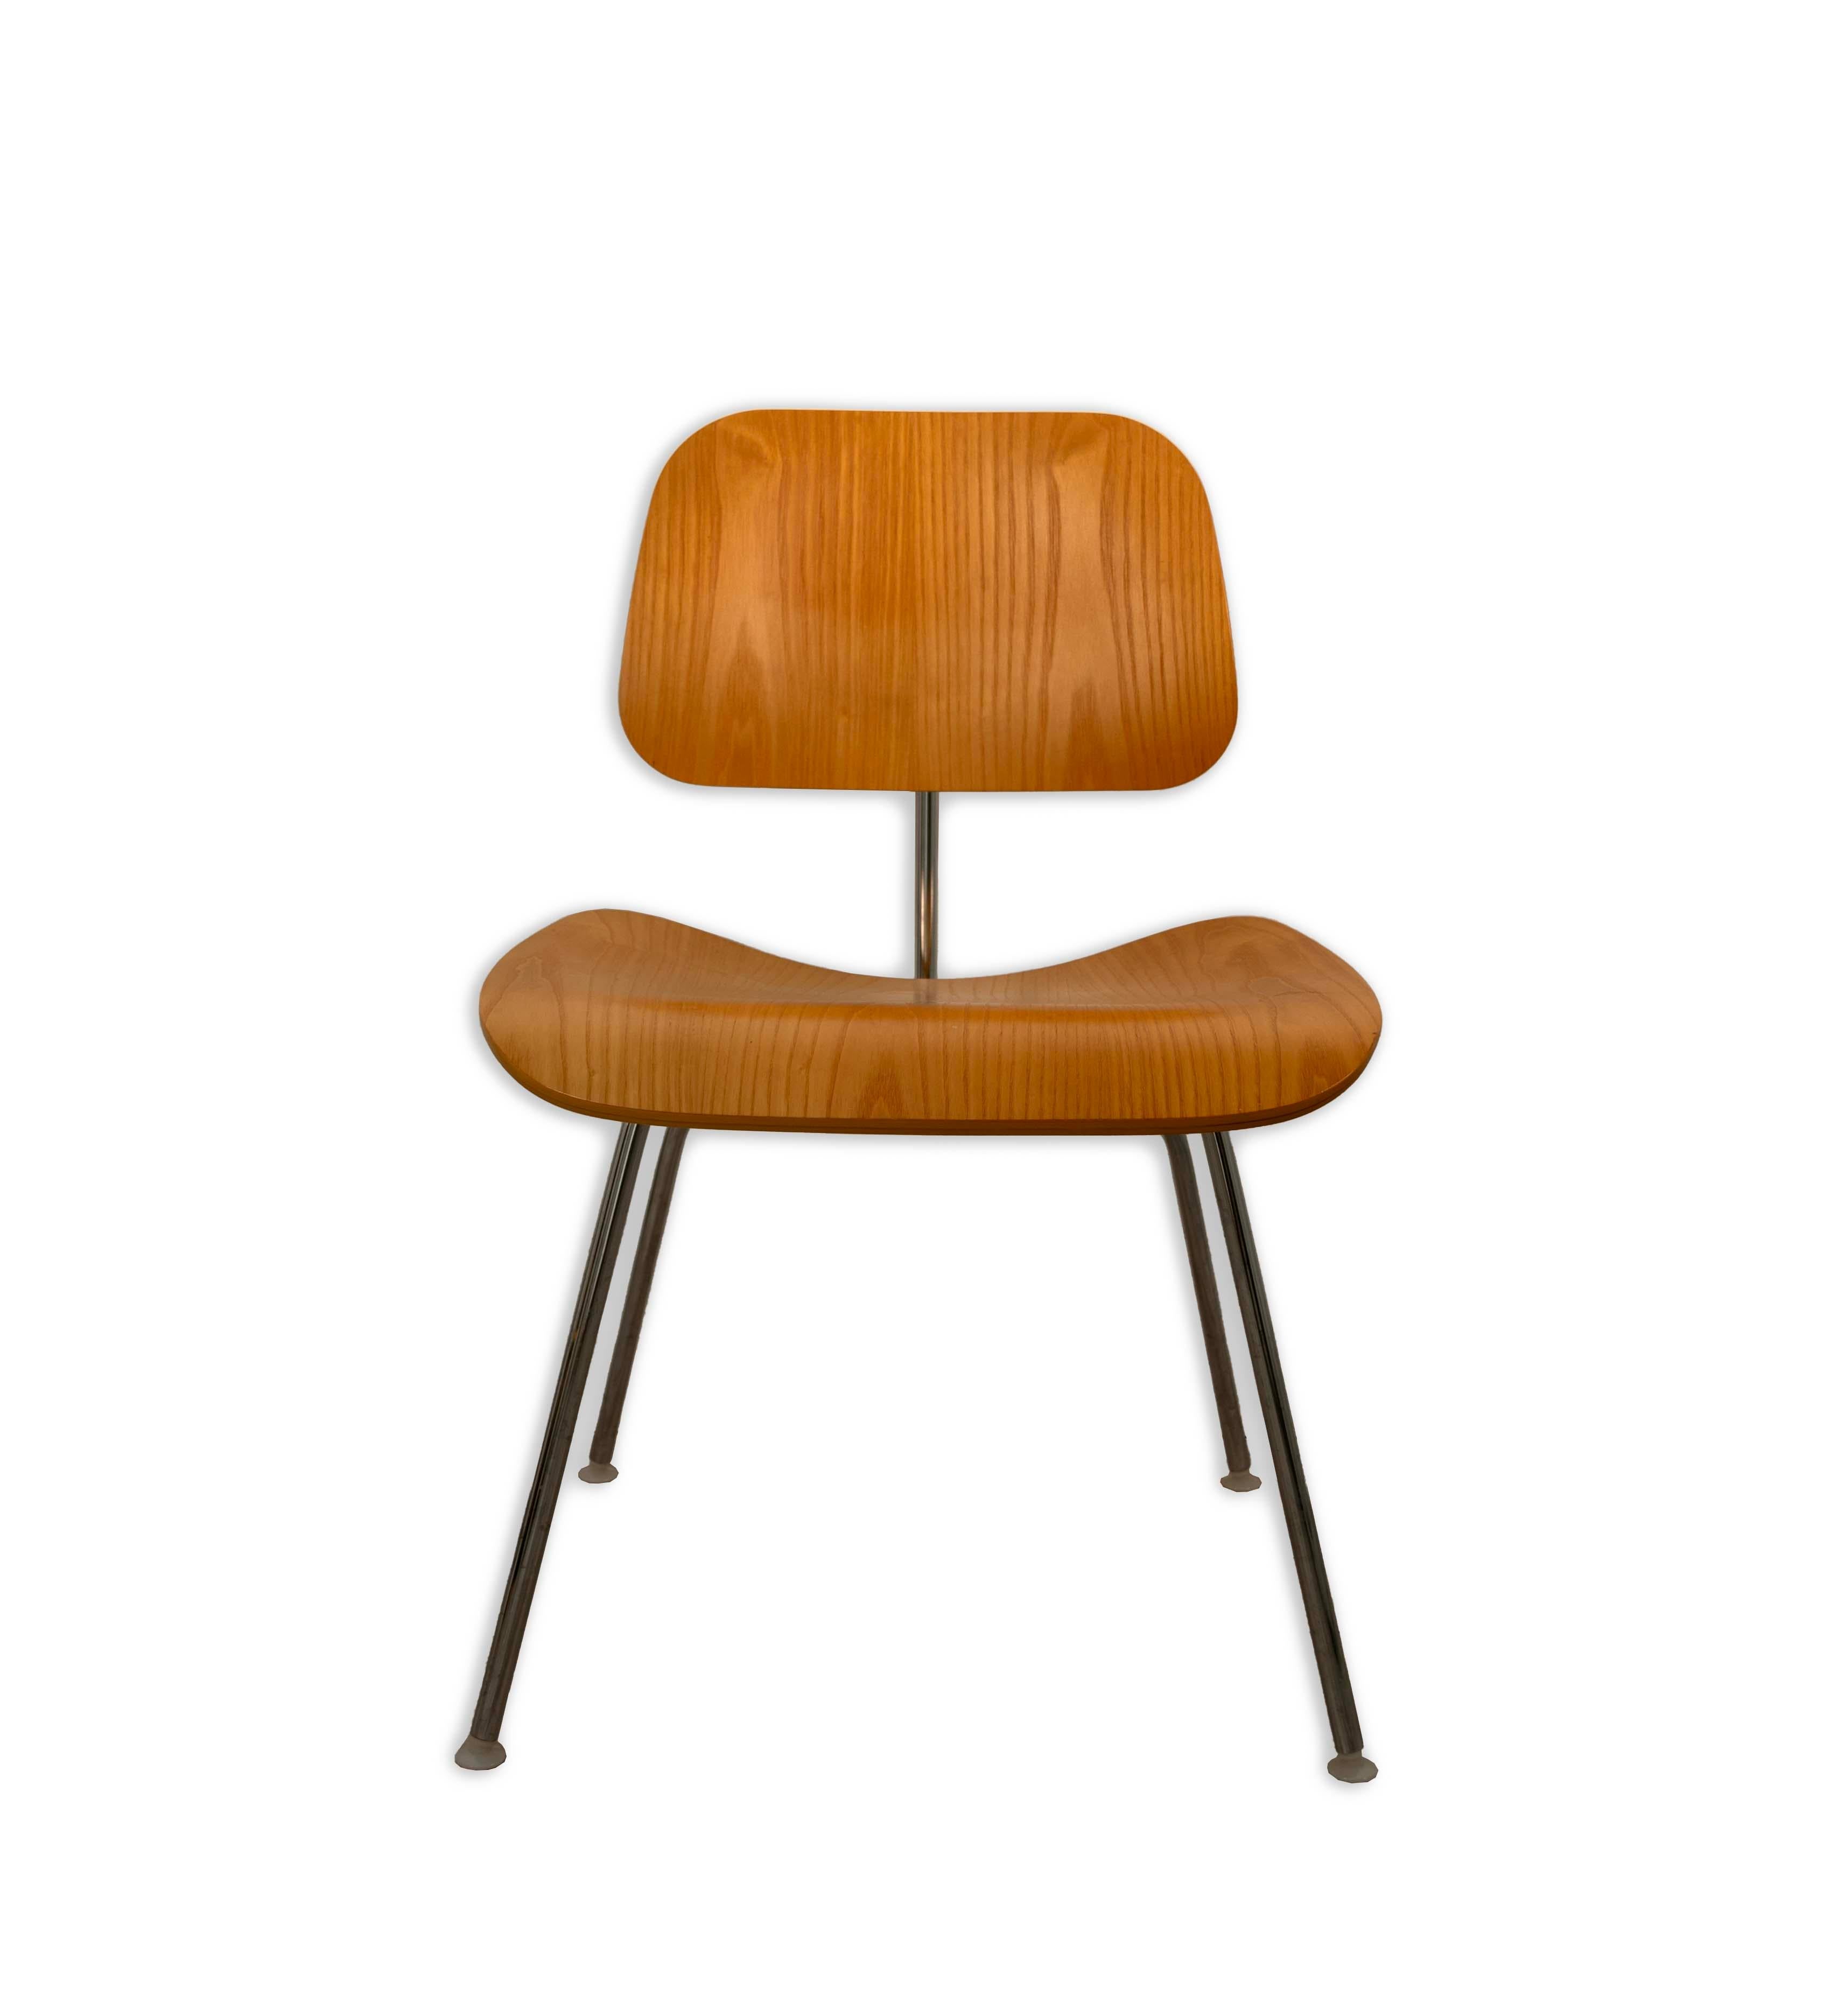  Rehaussez votre maison ou votre bureau avec le charme emblématique de la modernité du milieu du siècle de cette chaise Eames pour Herman Miller DCM. Avec sa structure en contreplaqué moulé, il allie la beauté naturelle à l'éclat industriel de sa